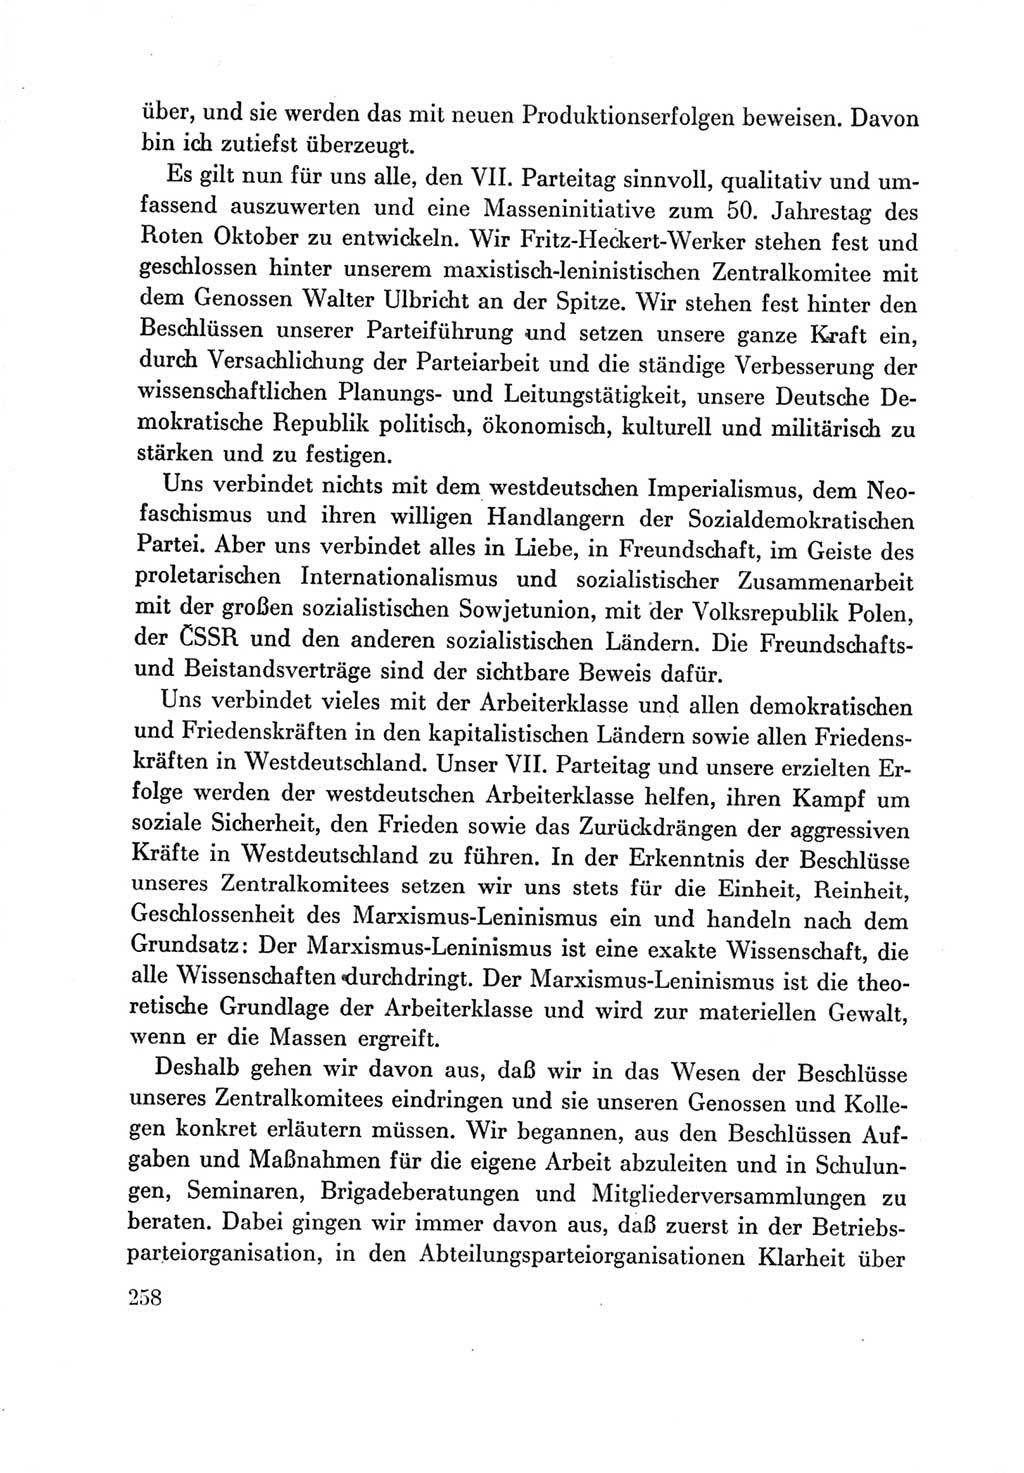 Protokoll der Verhandlungen des Ⅶ. Parteitages der Sozialistischen Einheitspartei Deutschlands (SED) [Deutsche Demokratische Republik (DDR)] 1967, Band Ⅲ, Seite 258 (Prot. Verh. Ⅶ. PT SED DDR 1967, Bd. Ⅲ, S. 258)